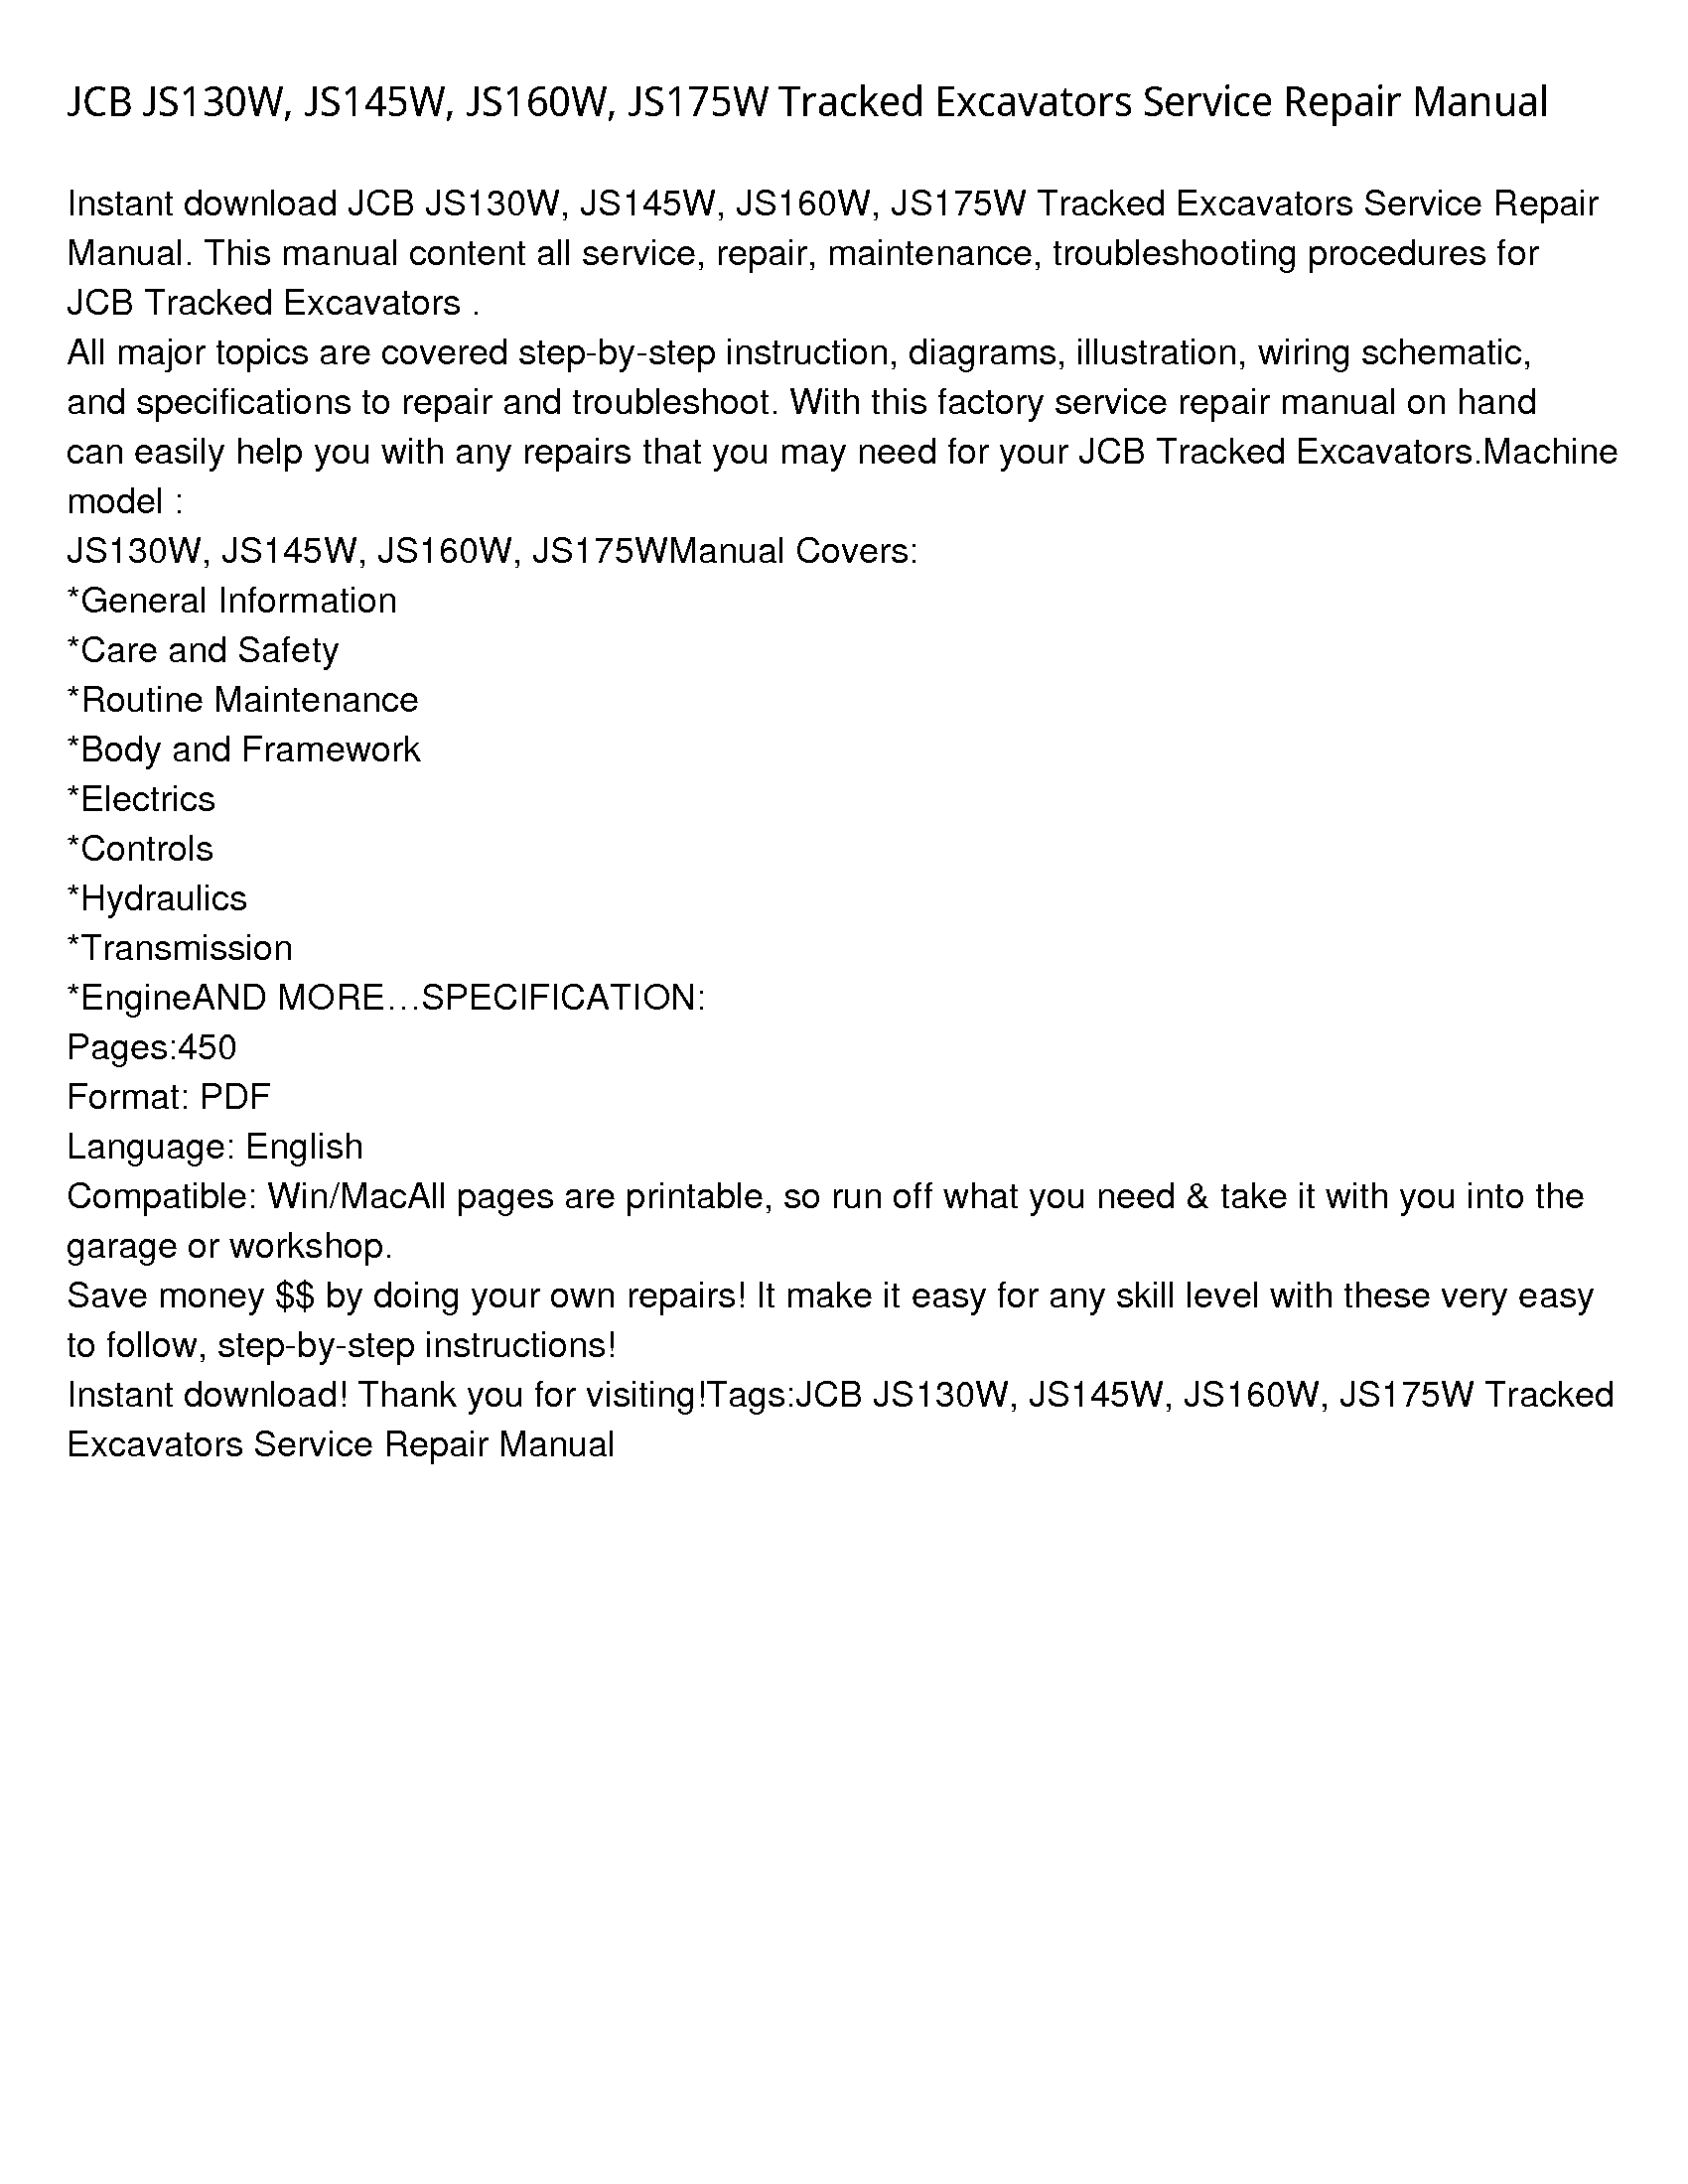 JCB JS130W Tracked Excavators manual